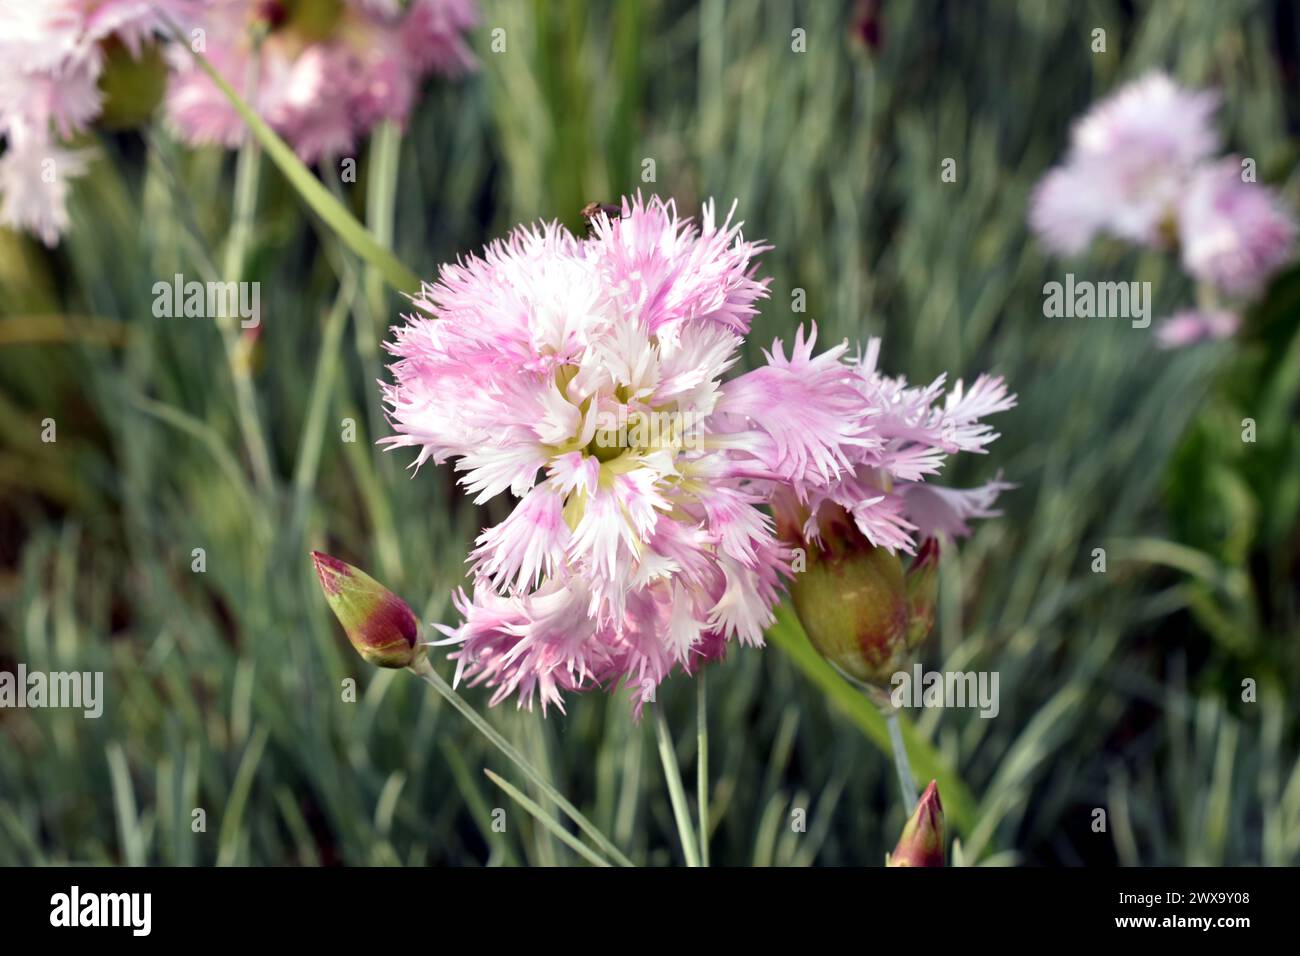 Grußkarte. Rosafarbene Nelkenblüten werden vor einem Hintergrund grüner Blätter fotografiert. Stockfoto